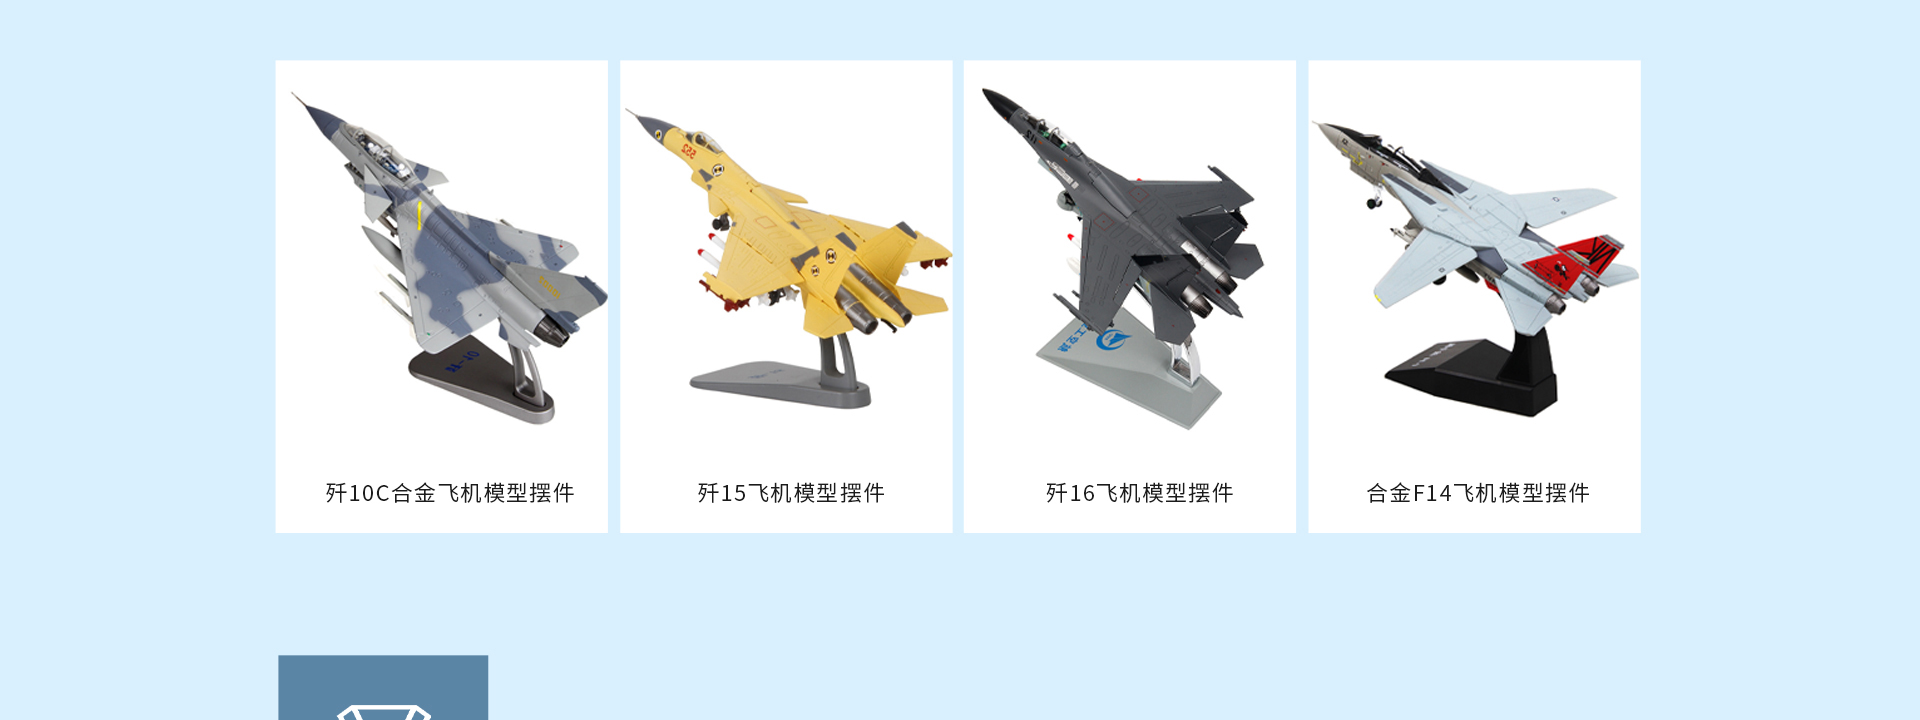 合金飞机模型摆件 仿真战斗机航模航空军事模型定做